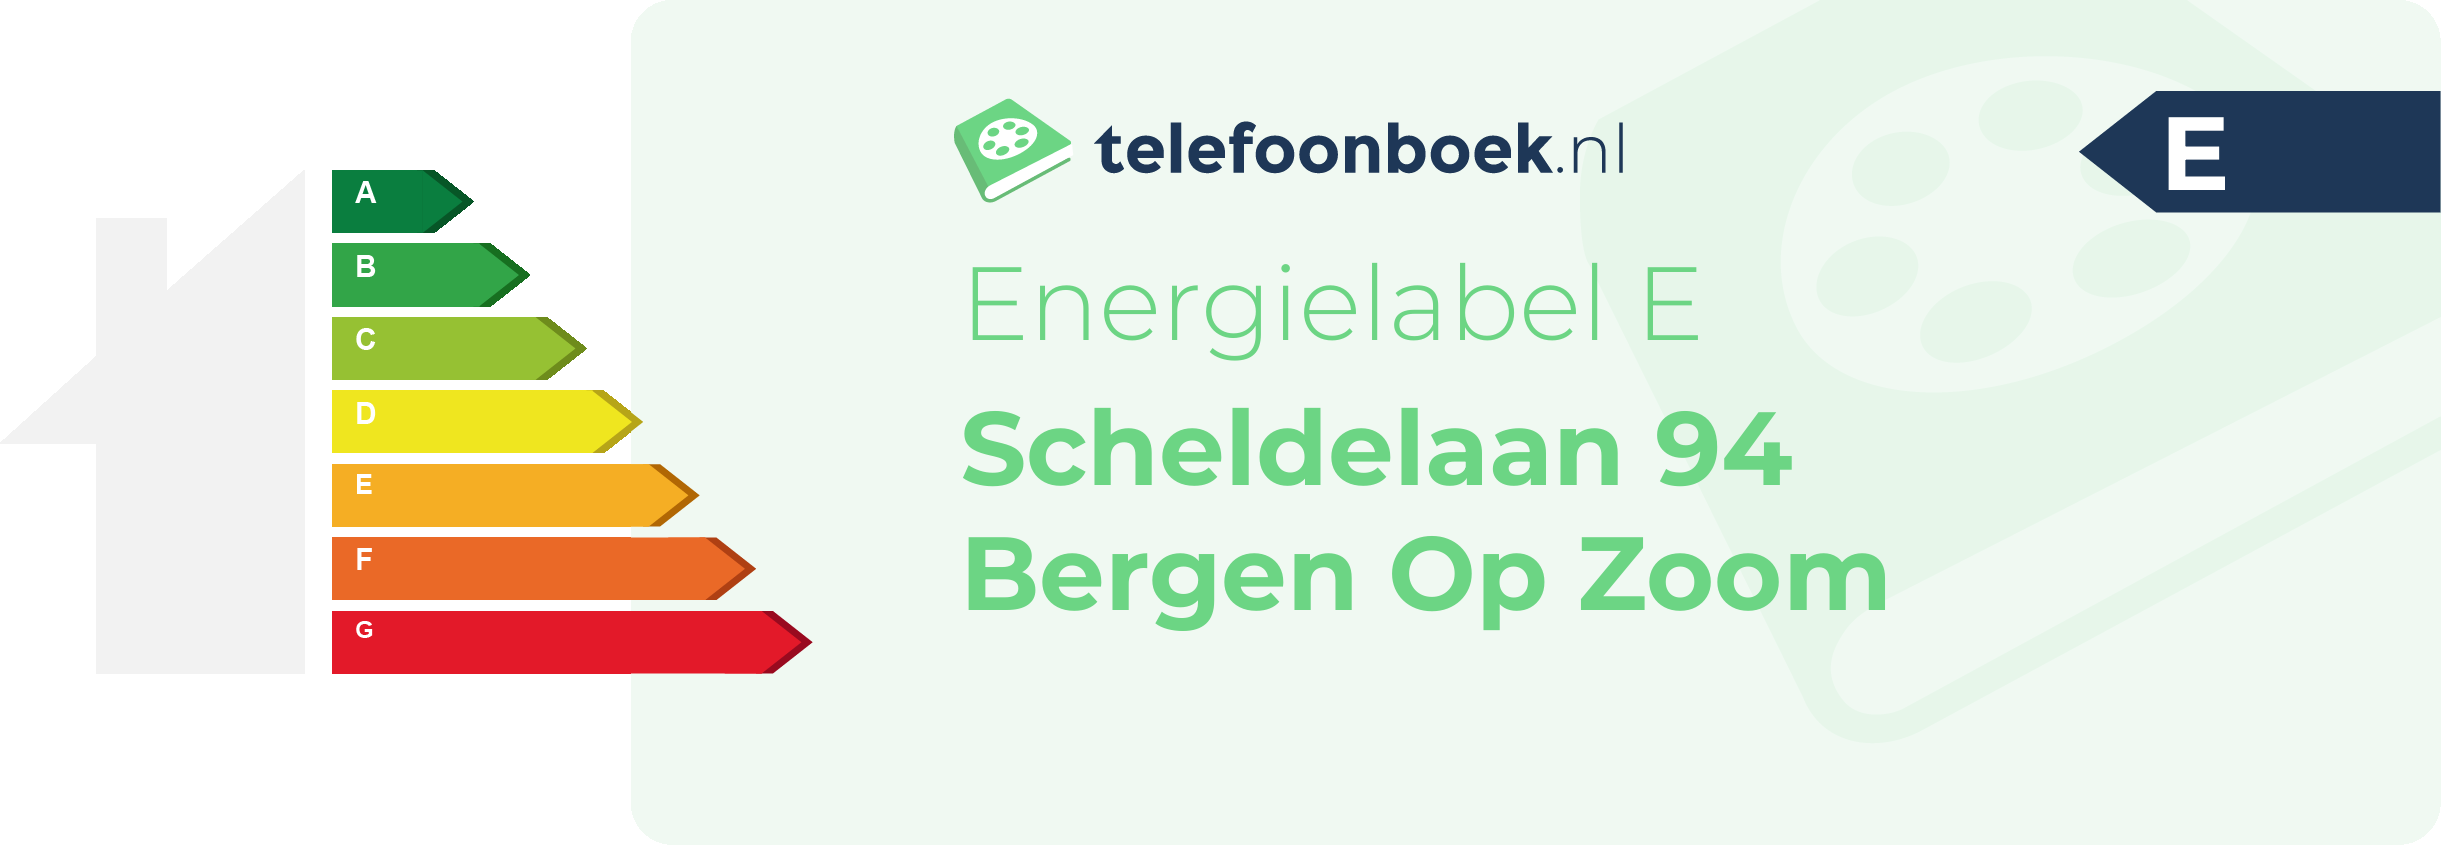 Energielabel Scheldelaan 94 Bergen Op Zoom